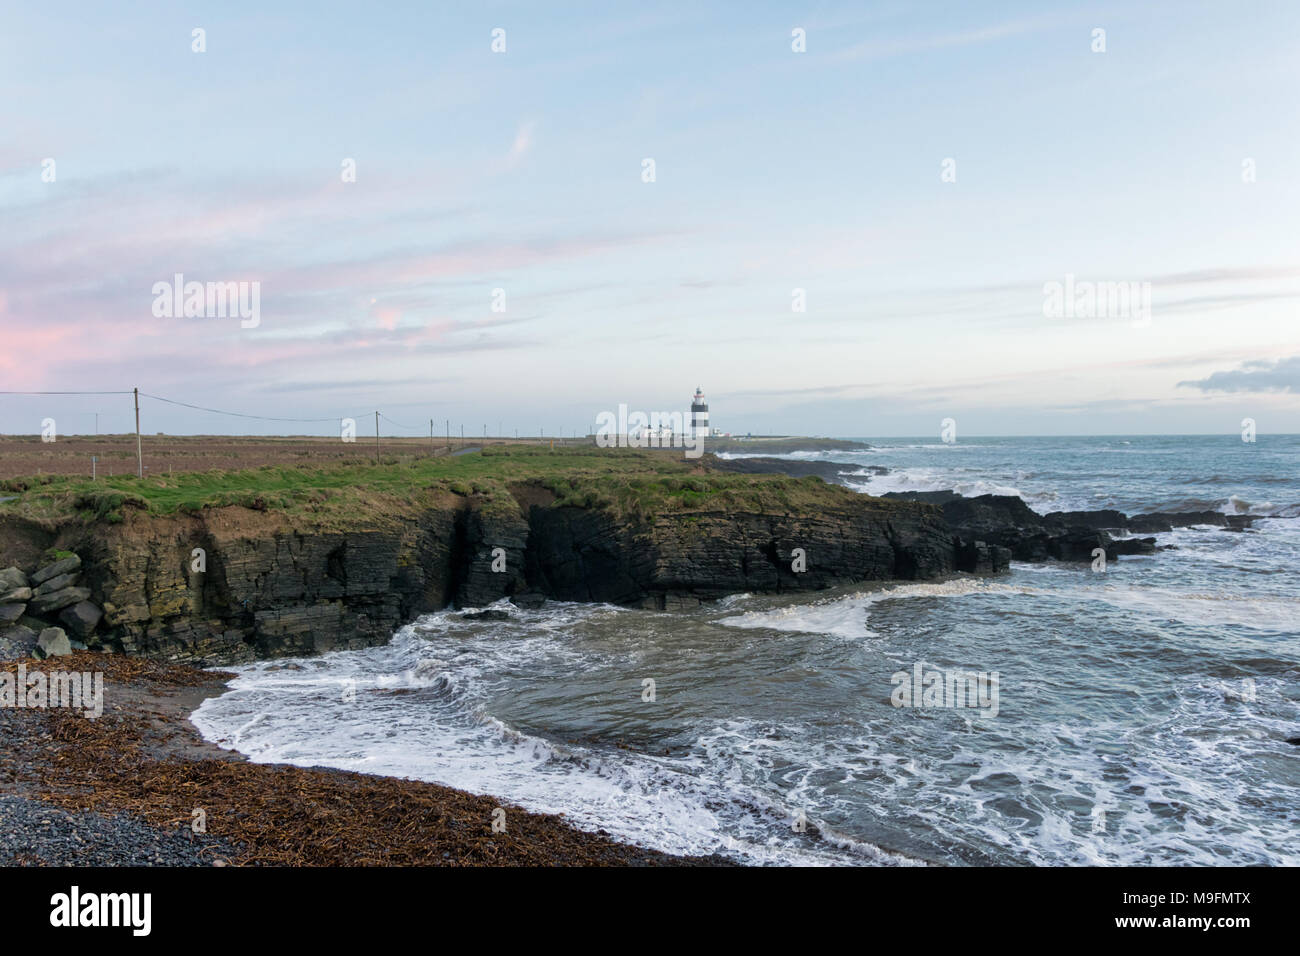 Irlandese casa di luce su una costa rocciosa con onde che si infrangono ione fino alla riva. Foto Stock